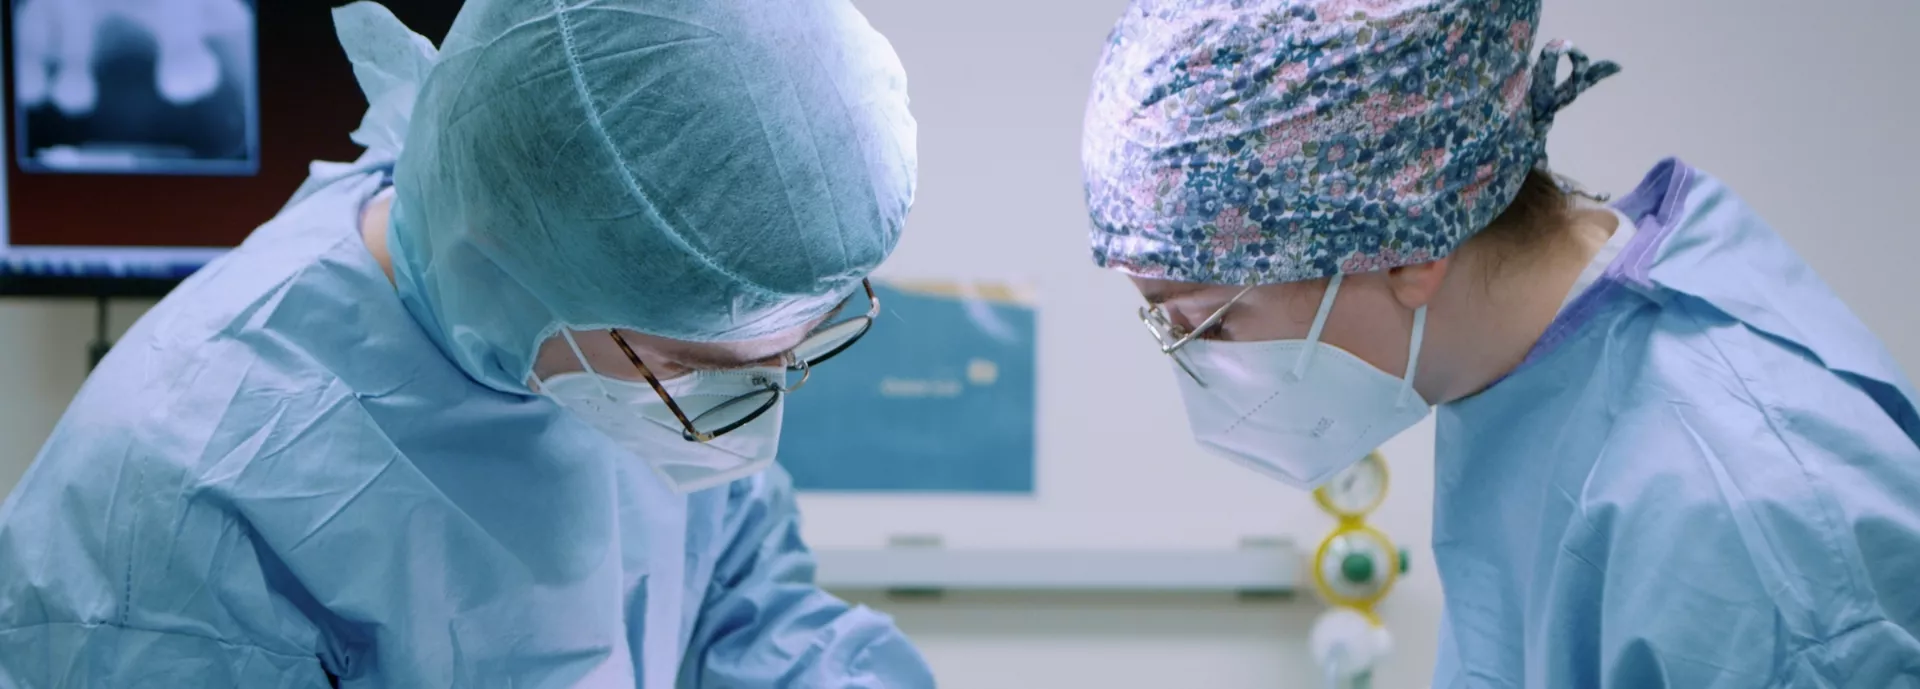 Visuel de transition : 2 médecins sont en train d'opérer un patient